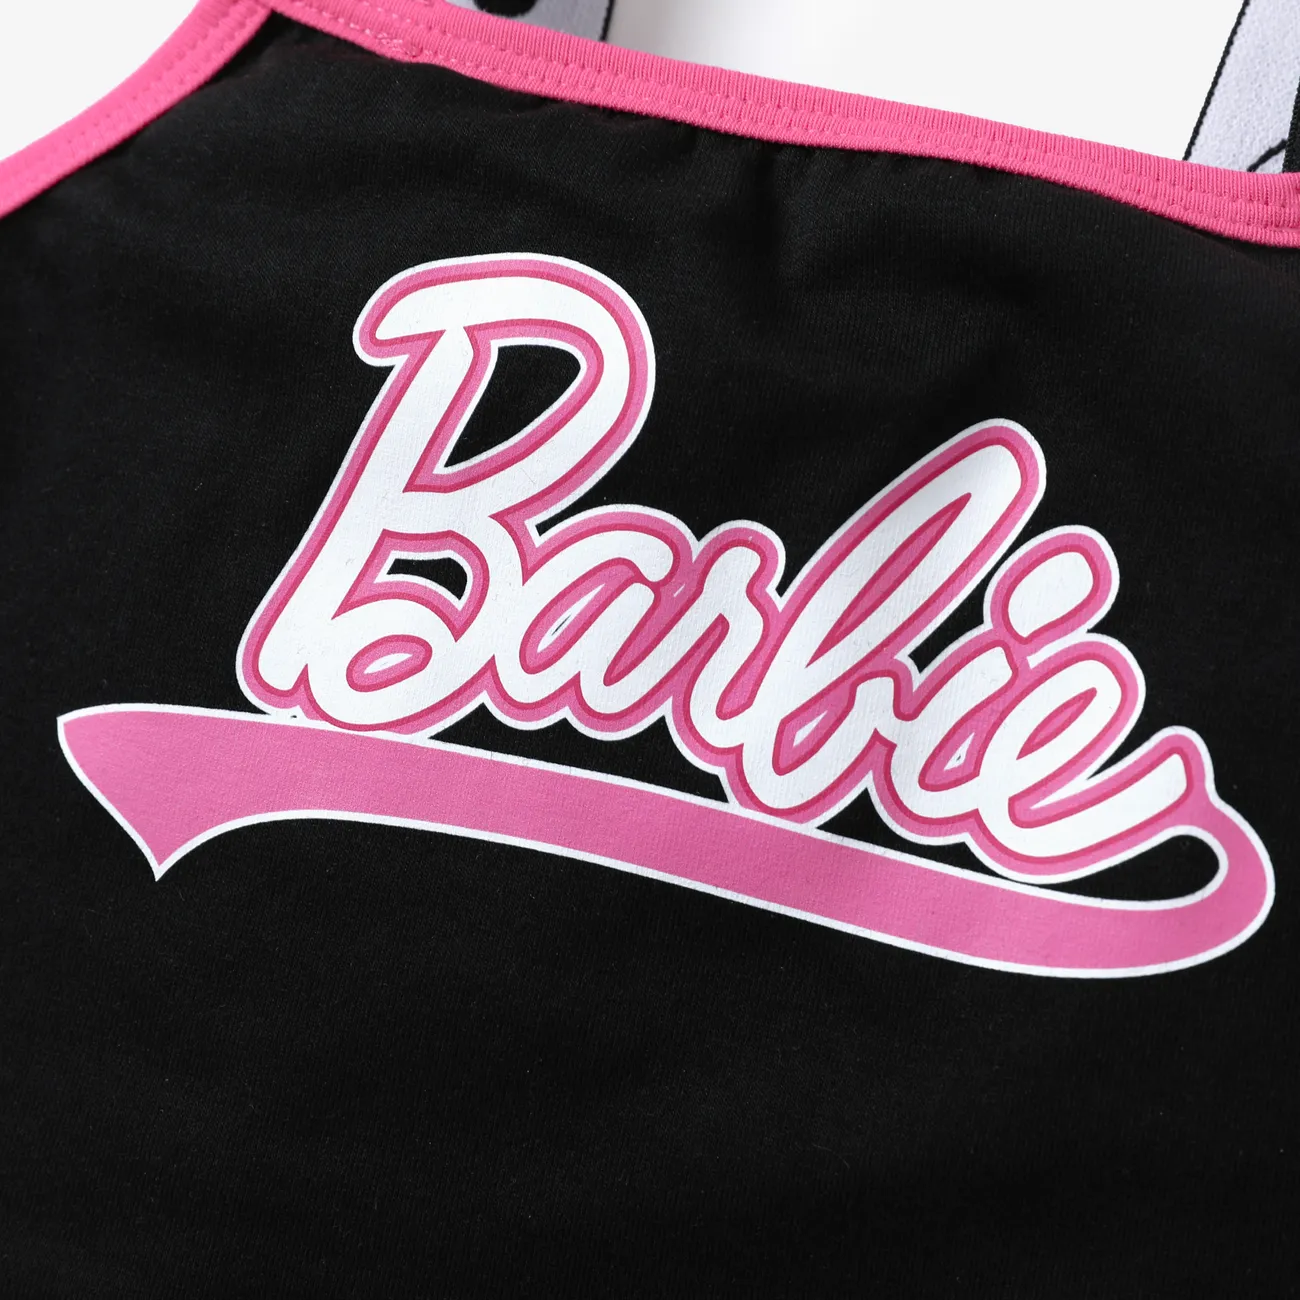 Barbie 2 Stück Mädchen Aufgesetzte Tasche Lässig Sets Rosa big image 1